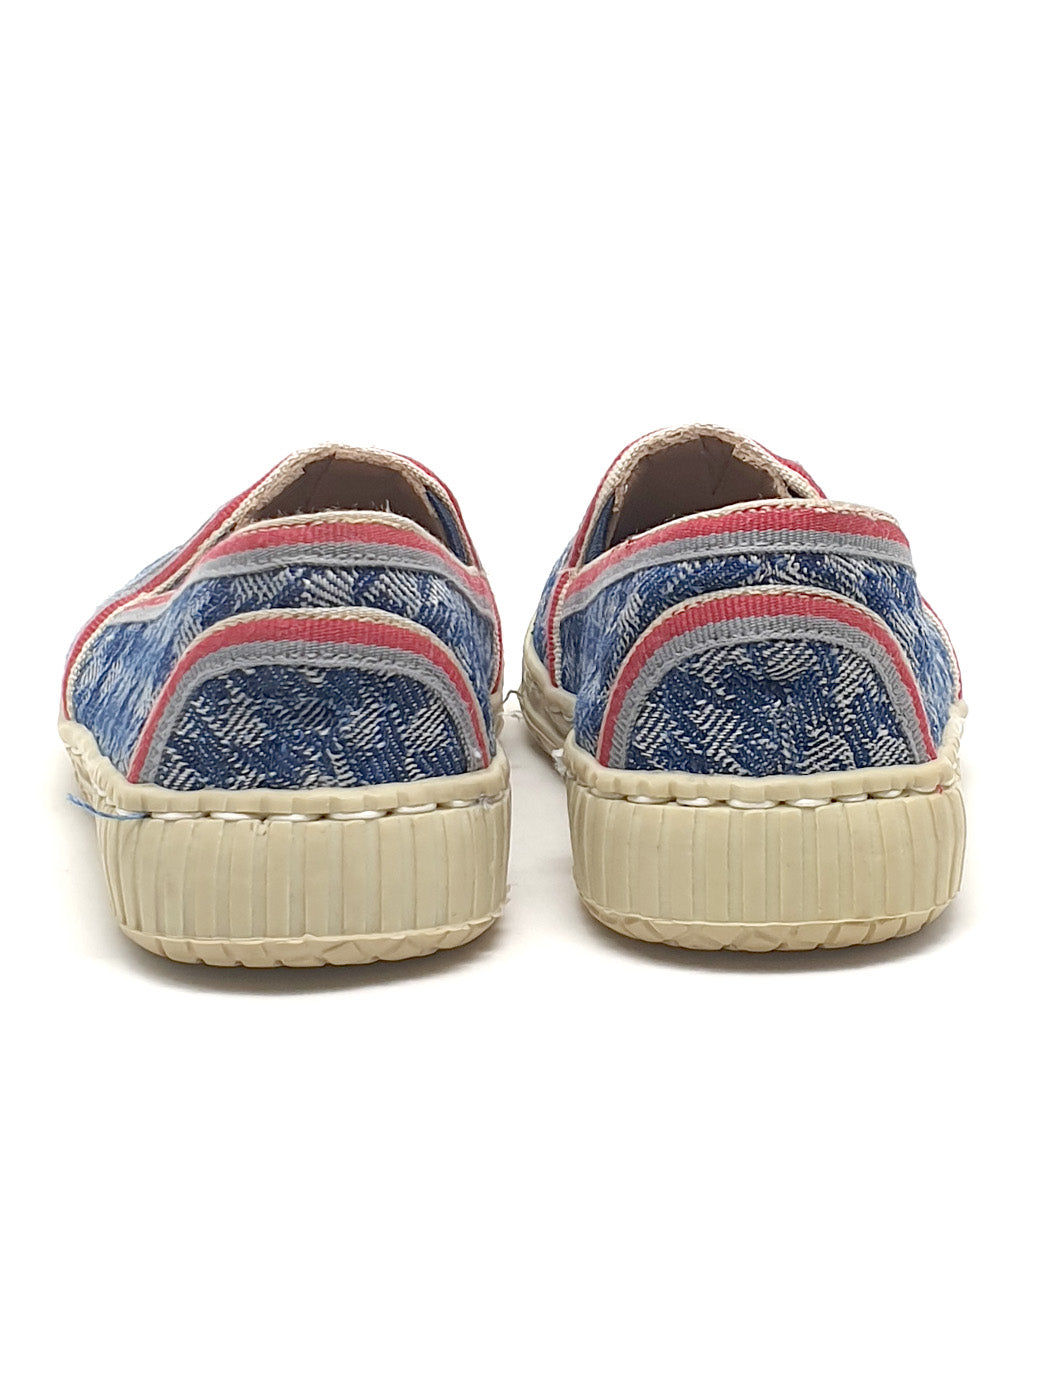 Baby's shoe sneaker for Boy-DC014 blue